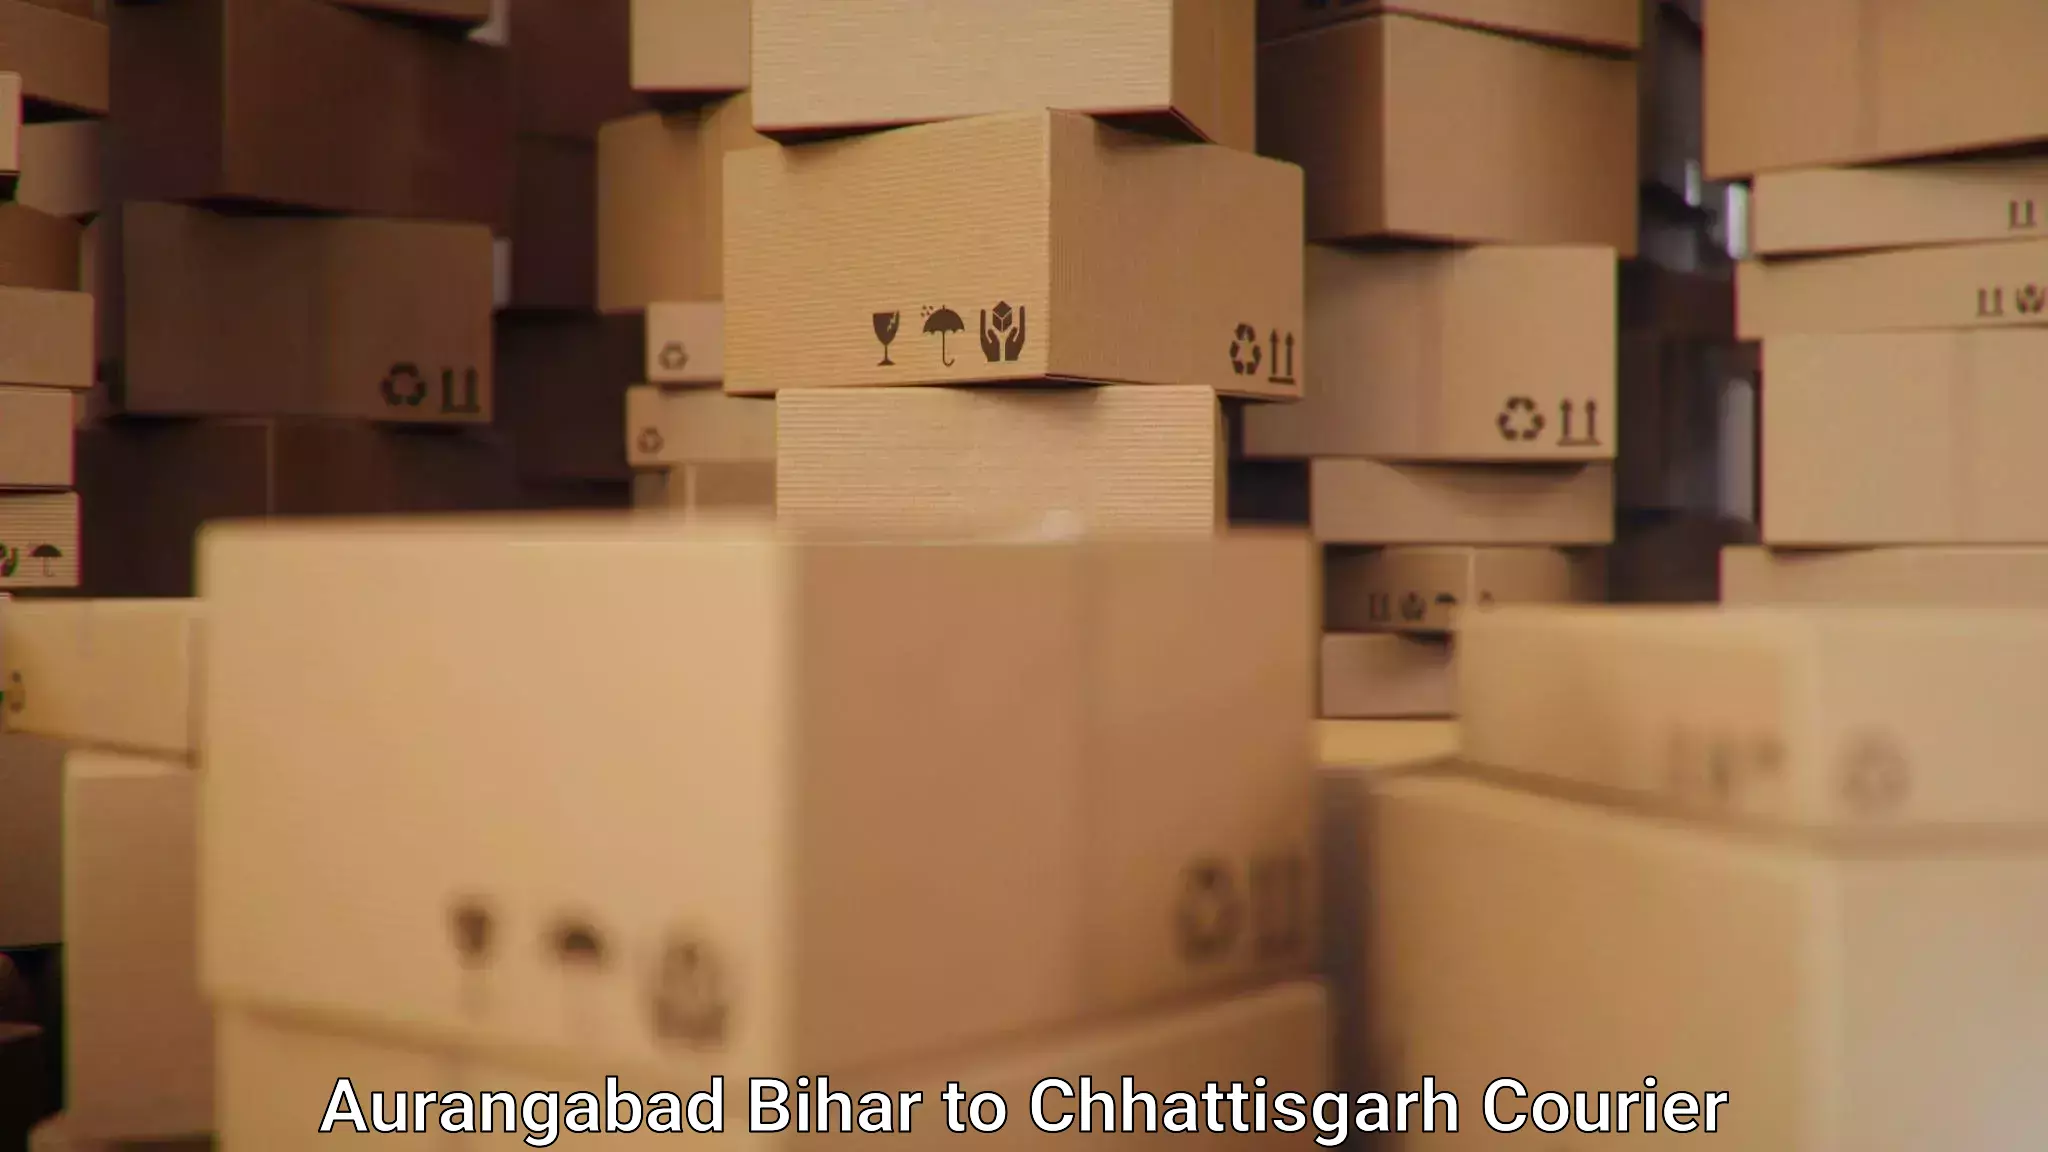 Modern delivery methods Aurangabad Bihar to Durg